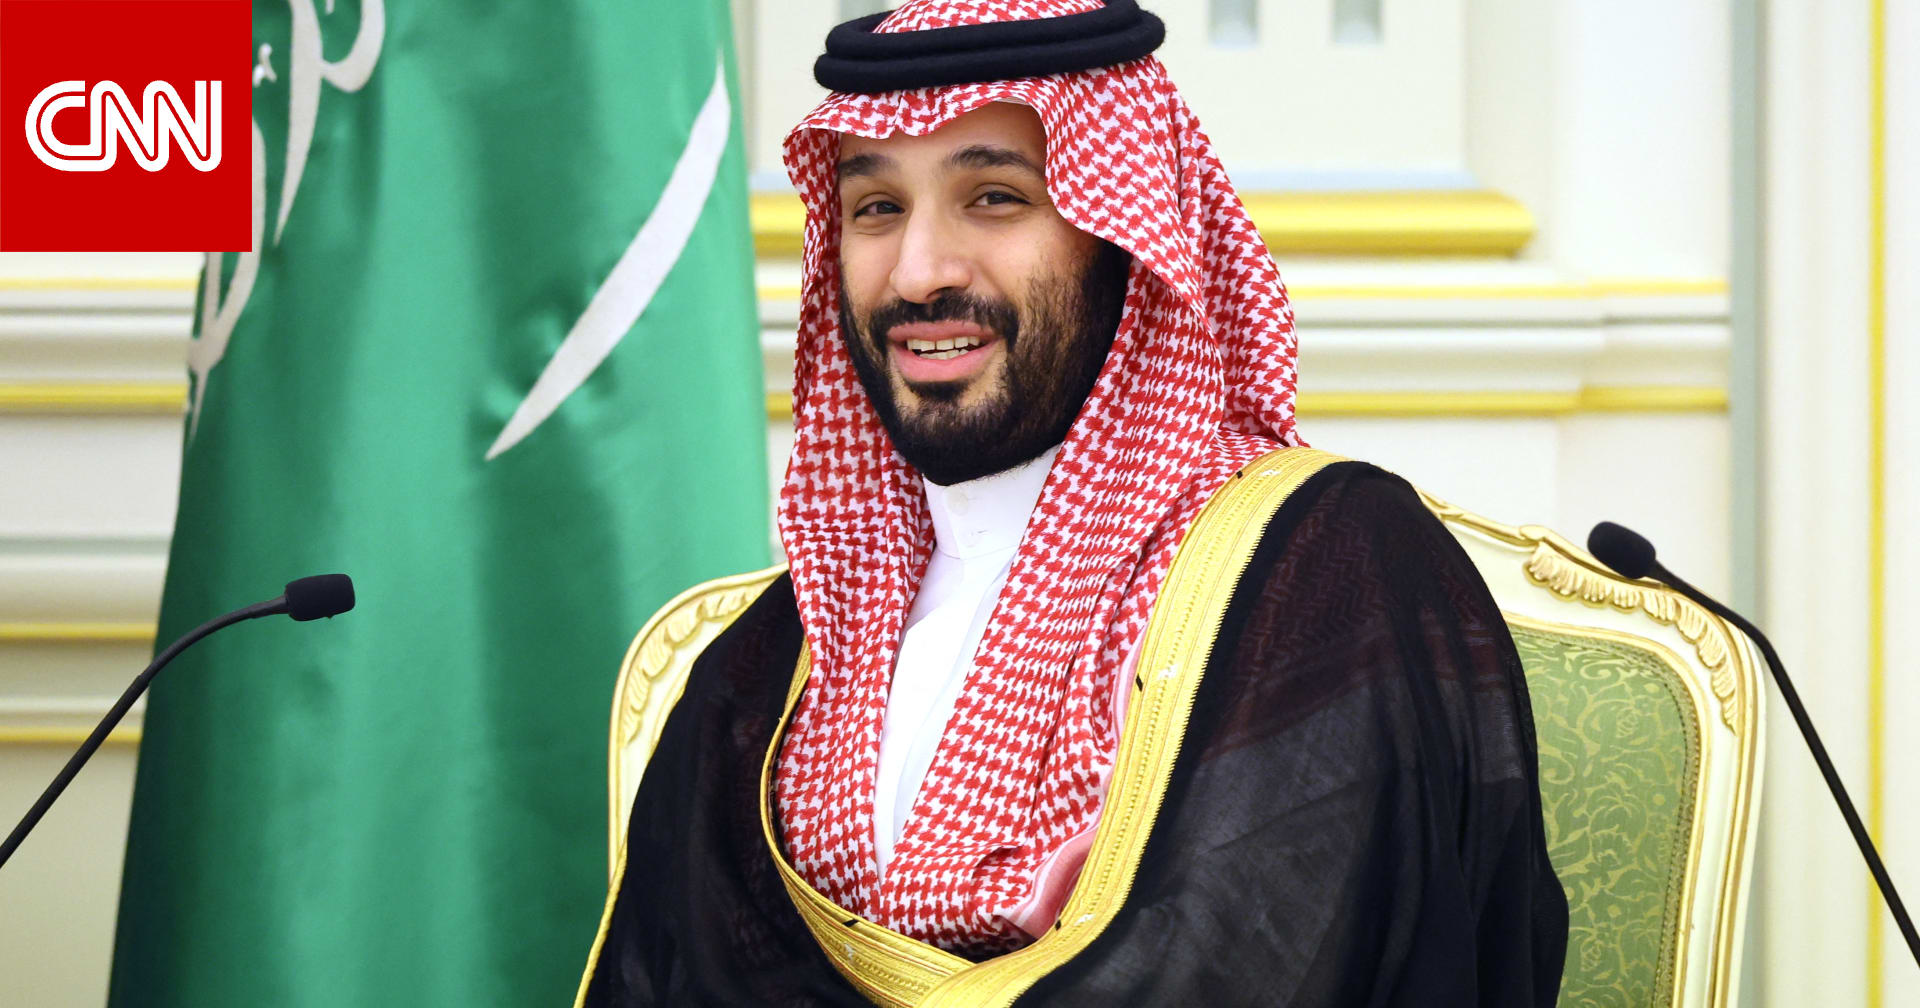 السعودية لا تستبعد الصداقة مع إسرائيل لكنها "قد تأتي بثمن أعلى"